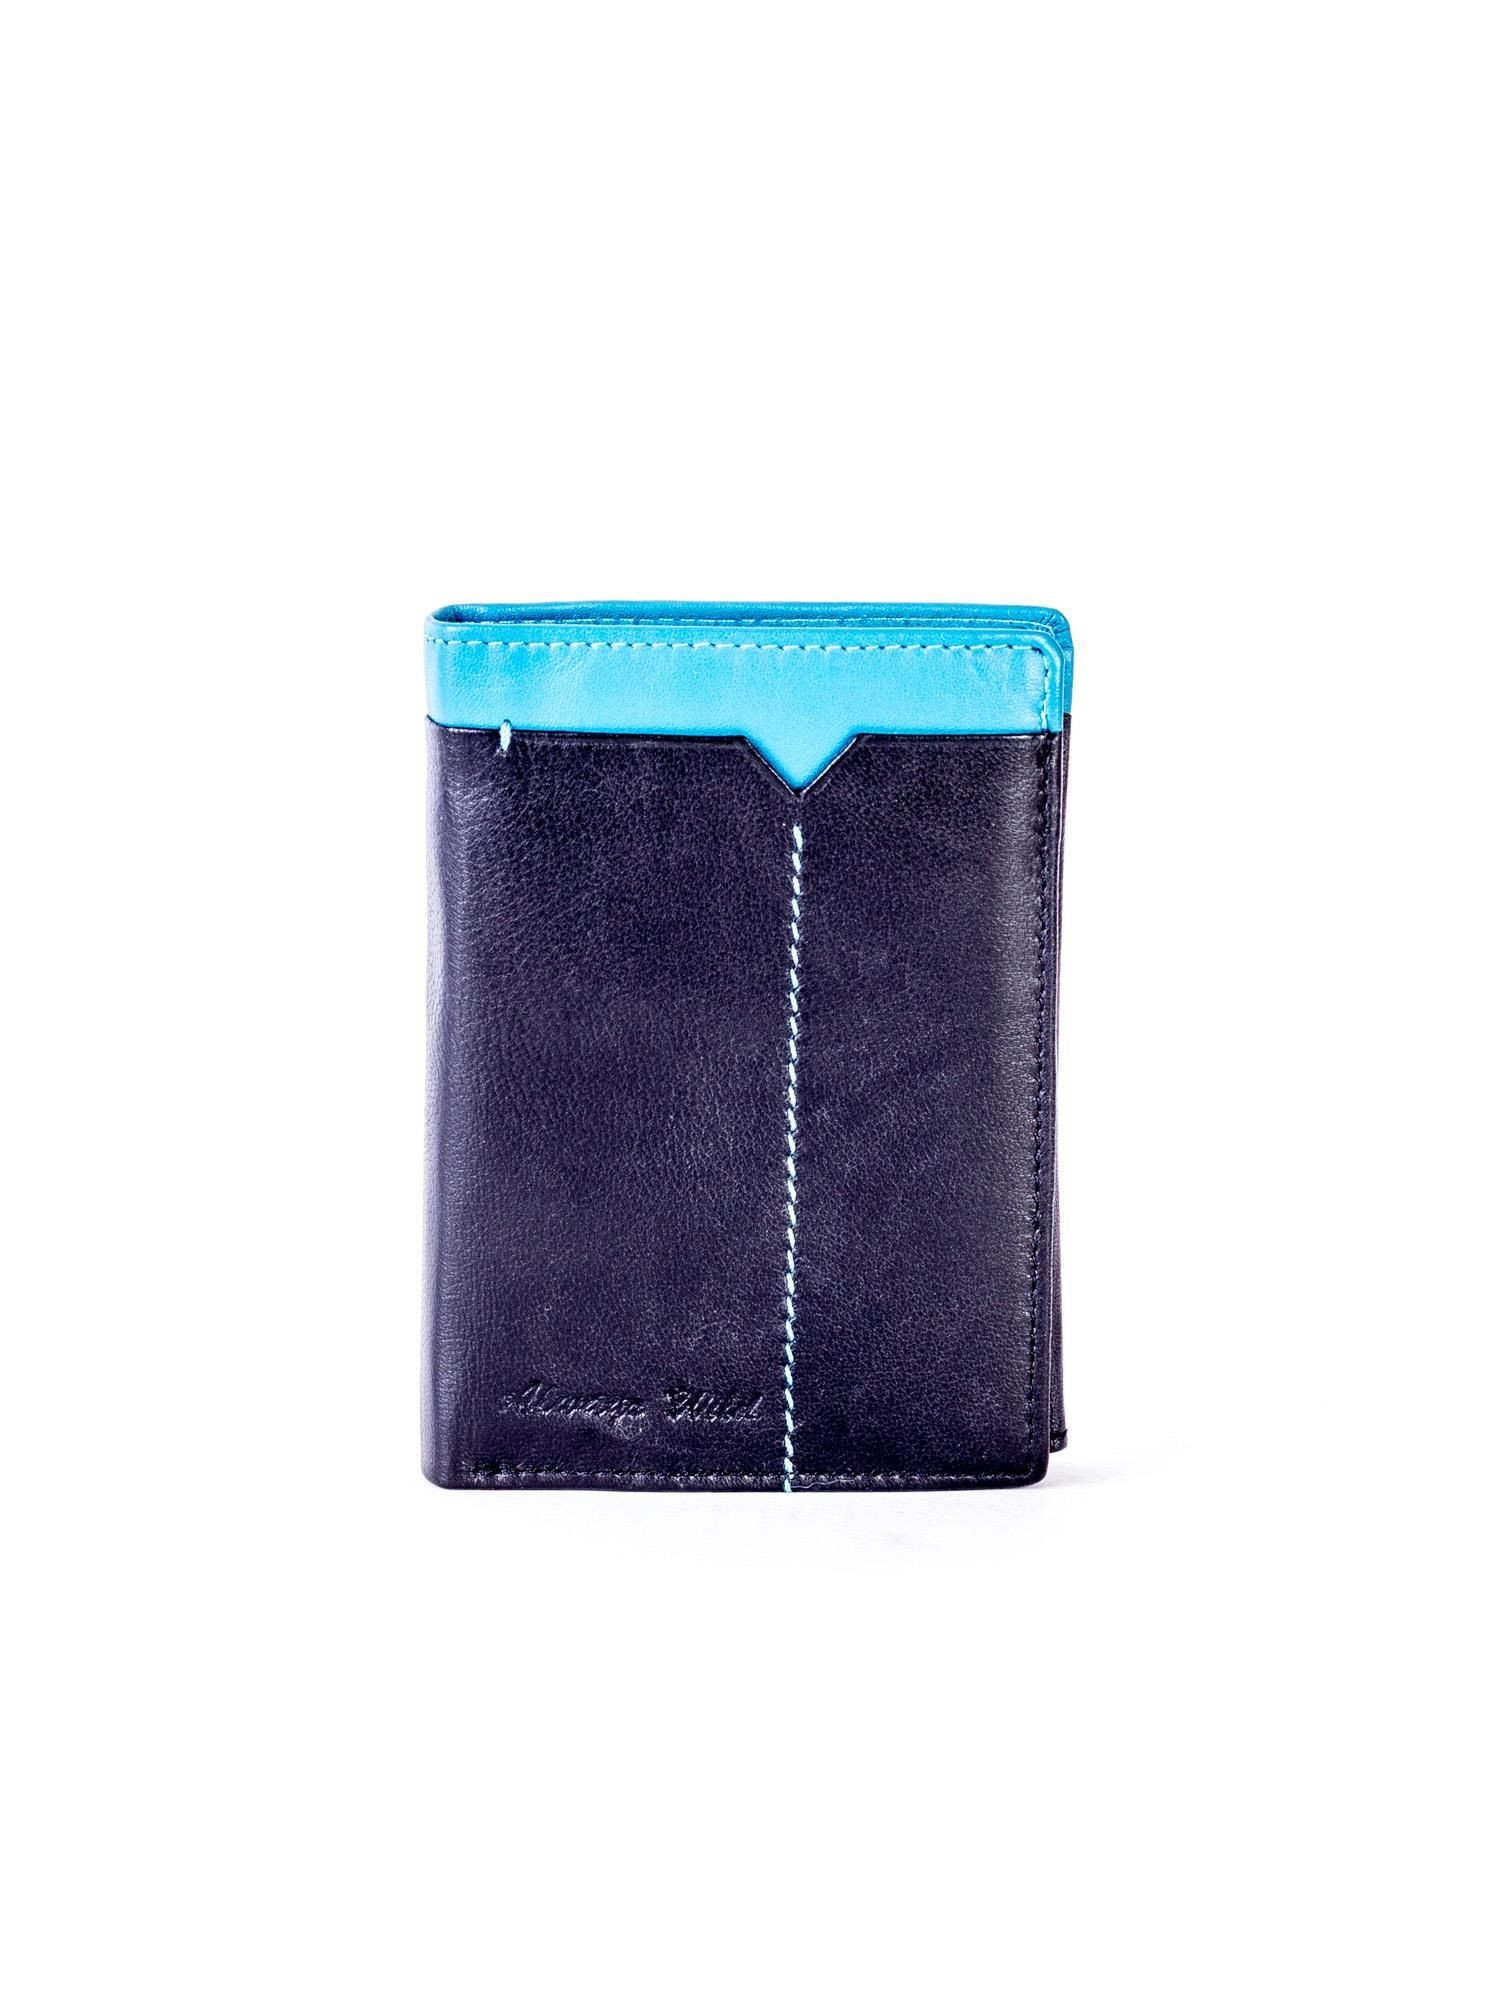 Peněženka CE PR MR03 SNN.95 černá a modrá jedna velikost